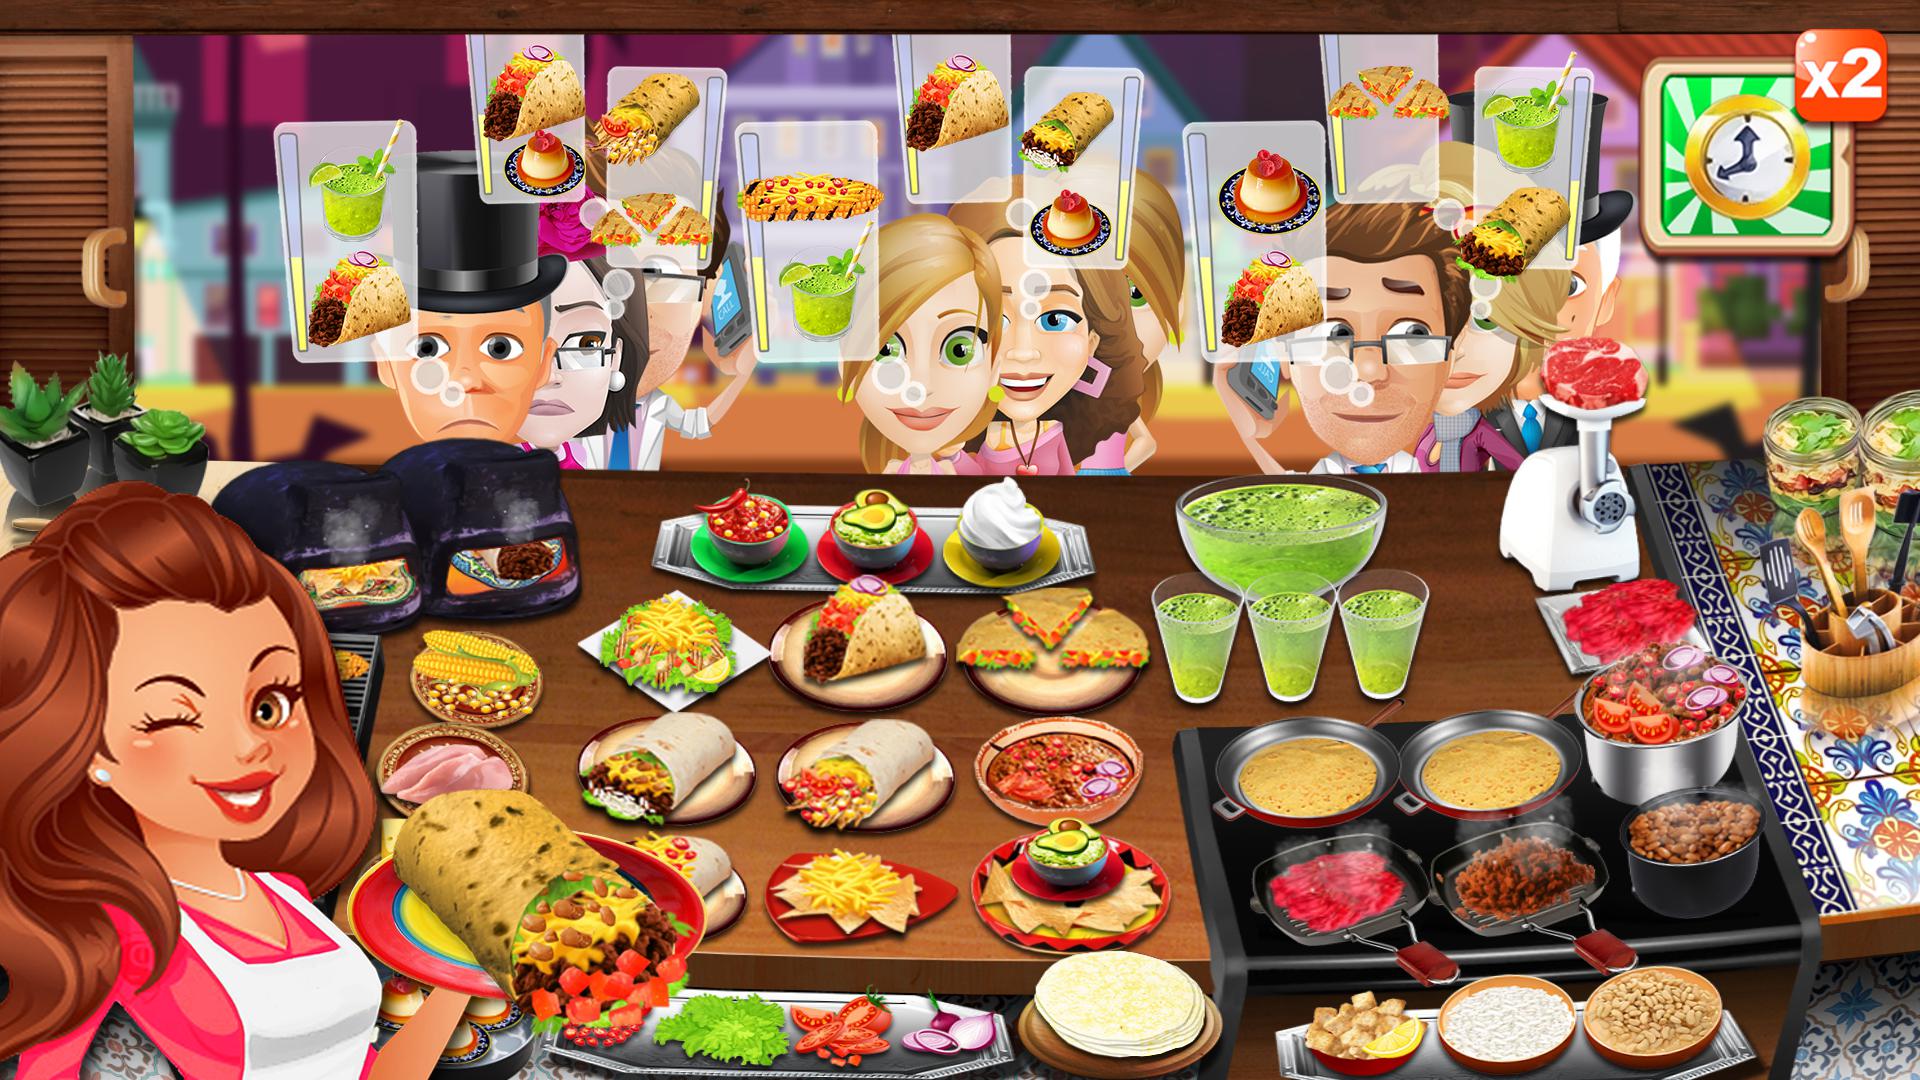 烹饪游戏:餐车厨师- 风靡全球的模拟烹饪游戏_截图_3